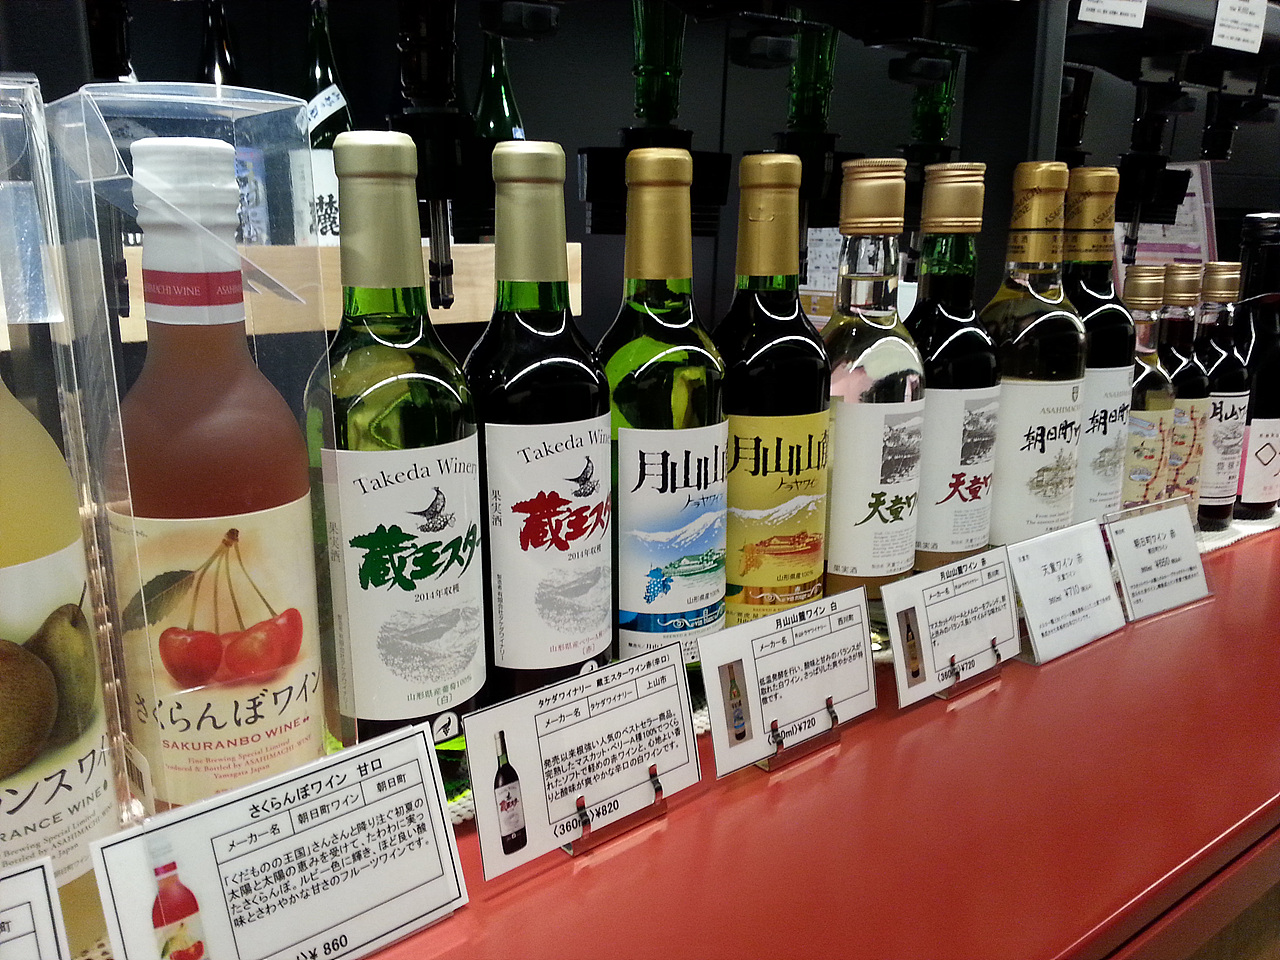  야마가타의 특산 와인 및 사케를 즐기는 15호차 BAR.